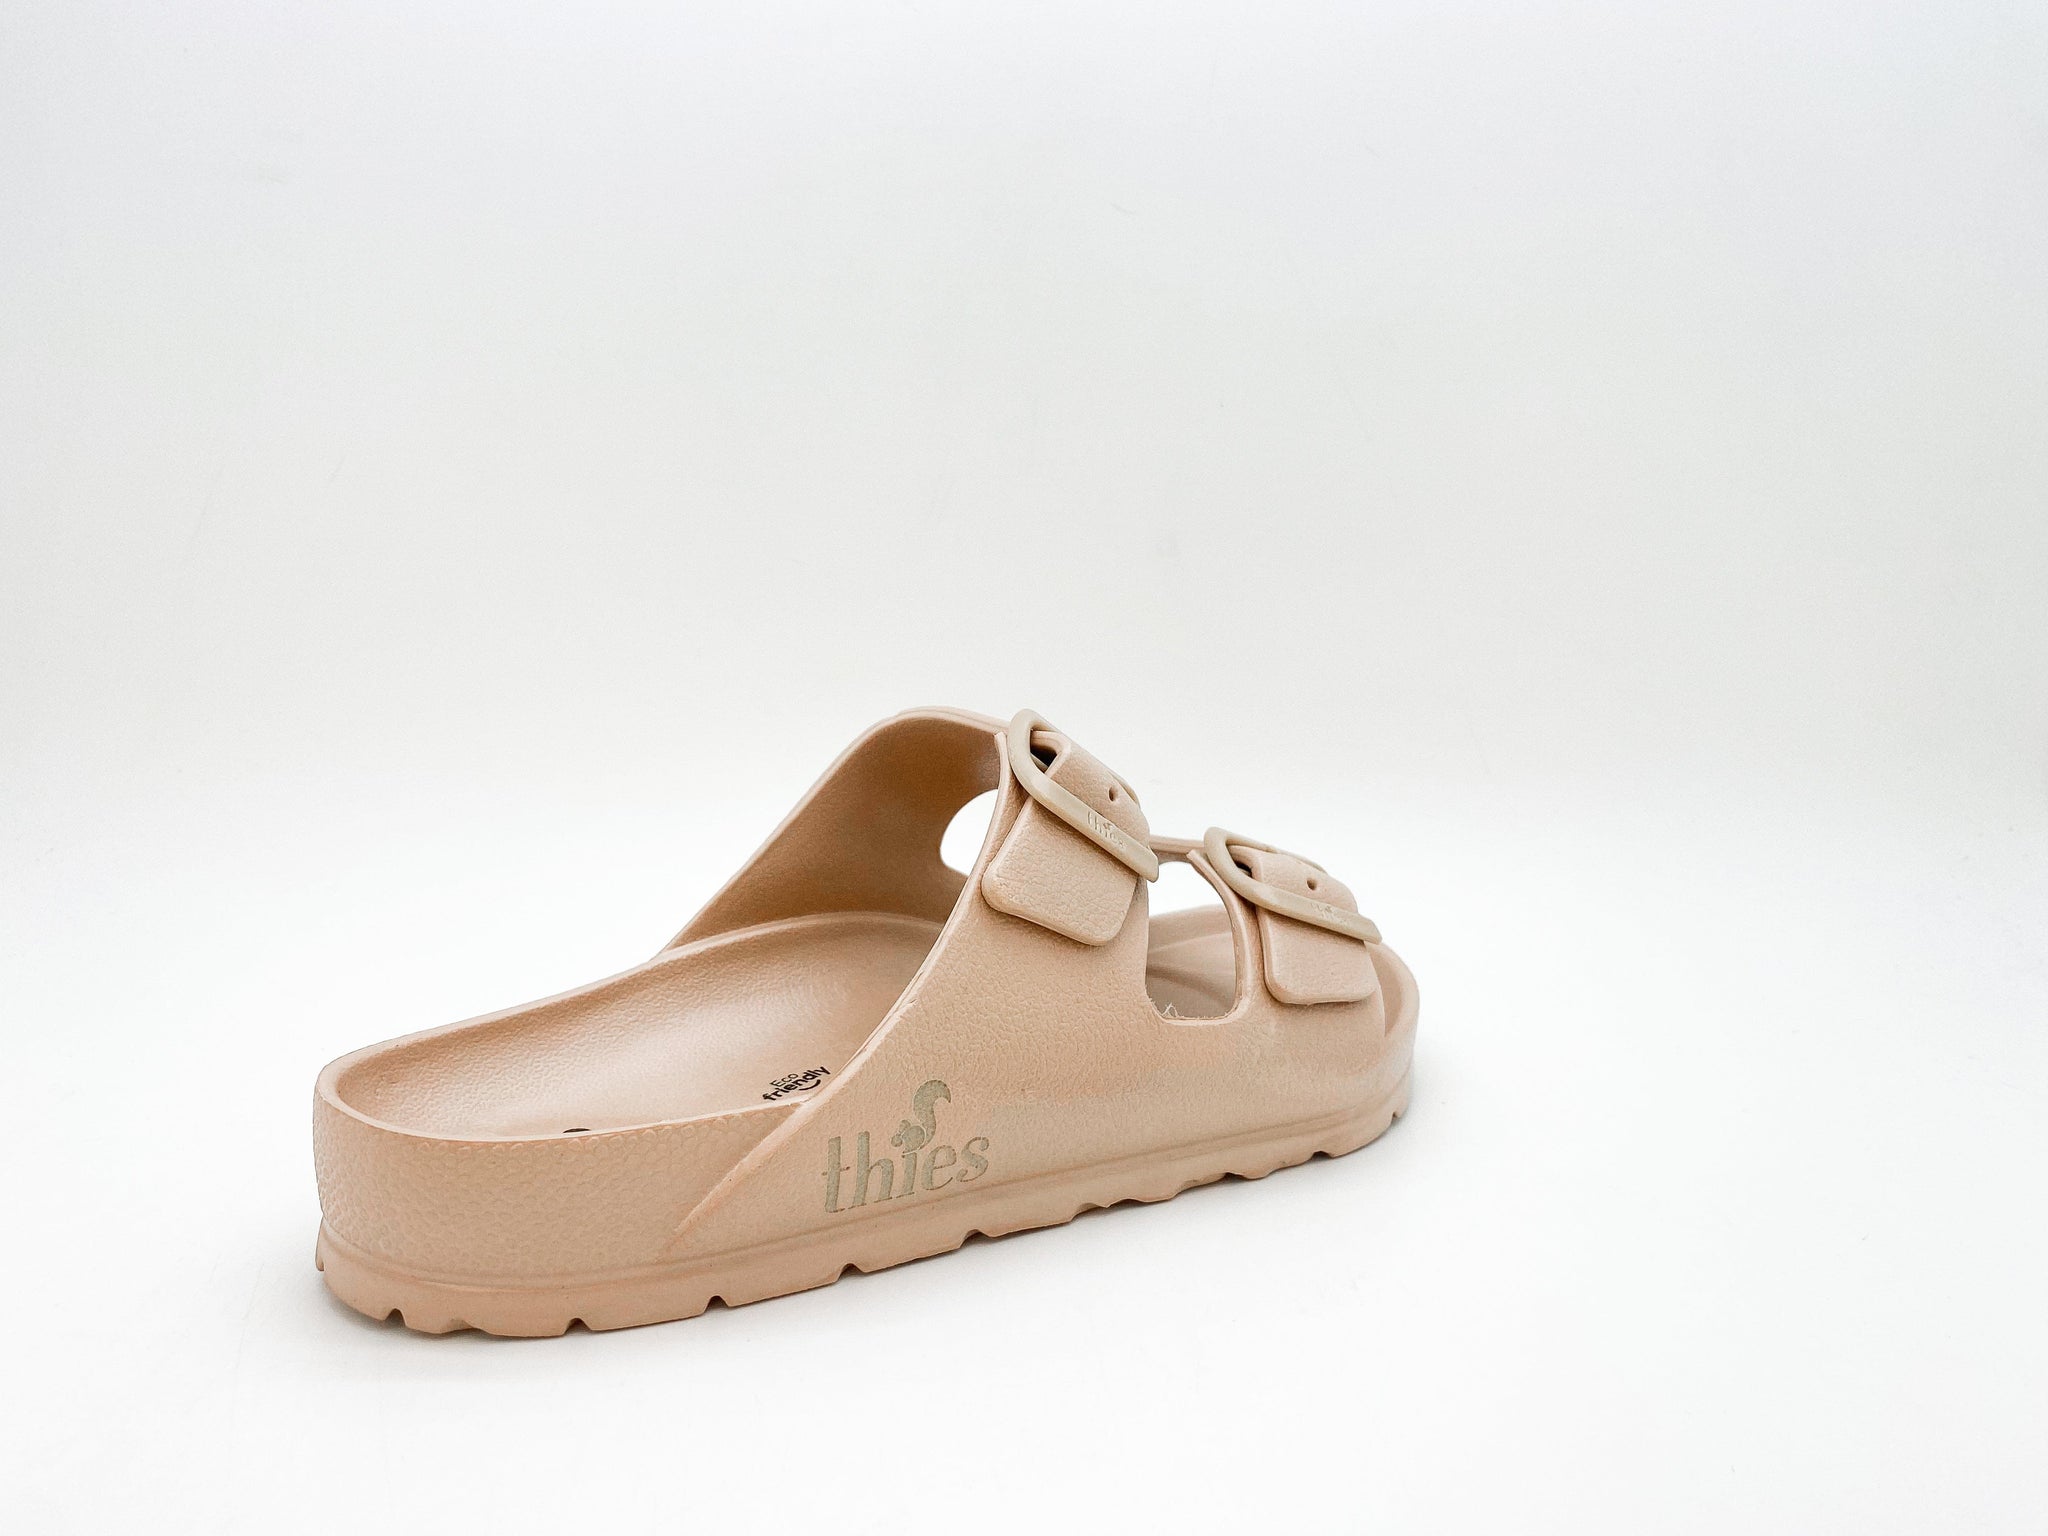 NAT 2 fodtøj thies 1856 ® Ecofoam Sandal bronze bæredygtig mode etisk mode